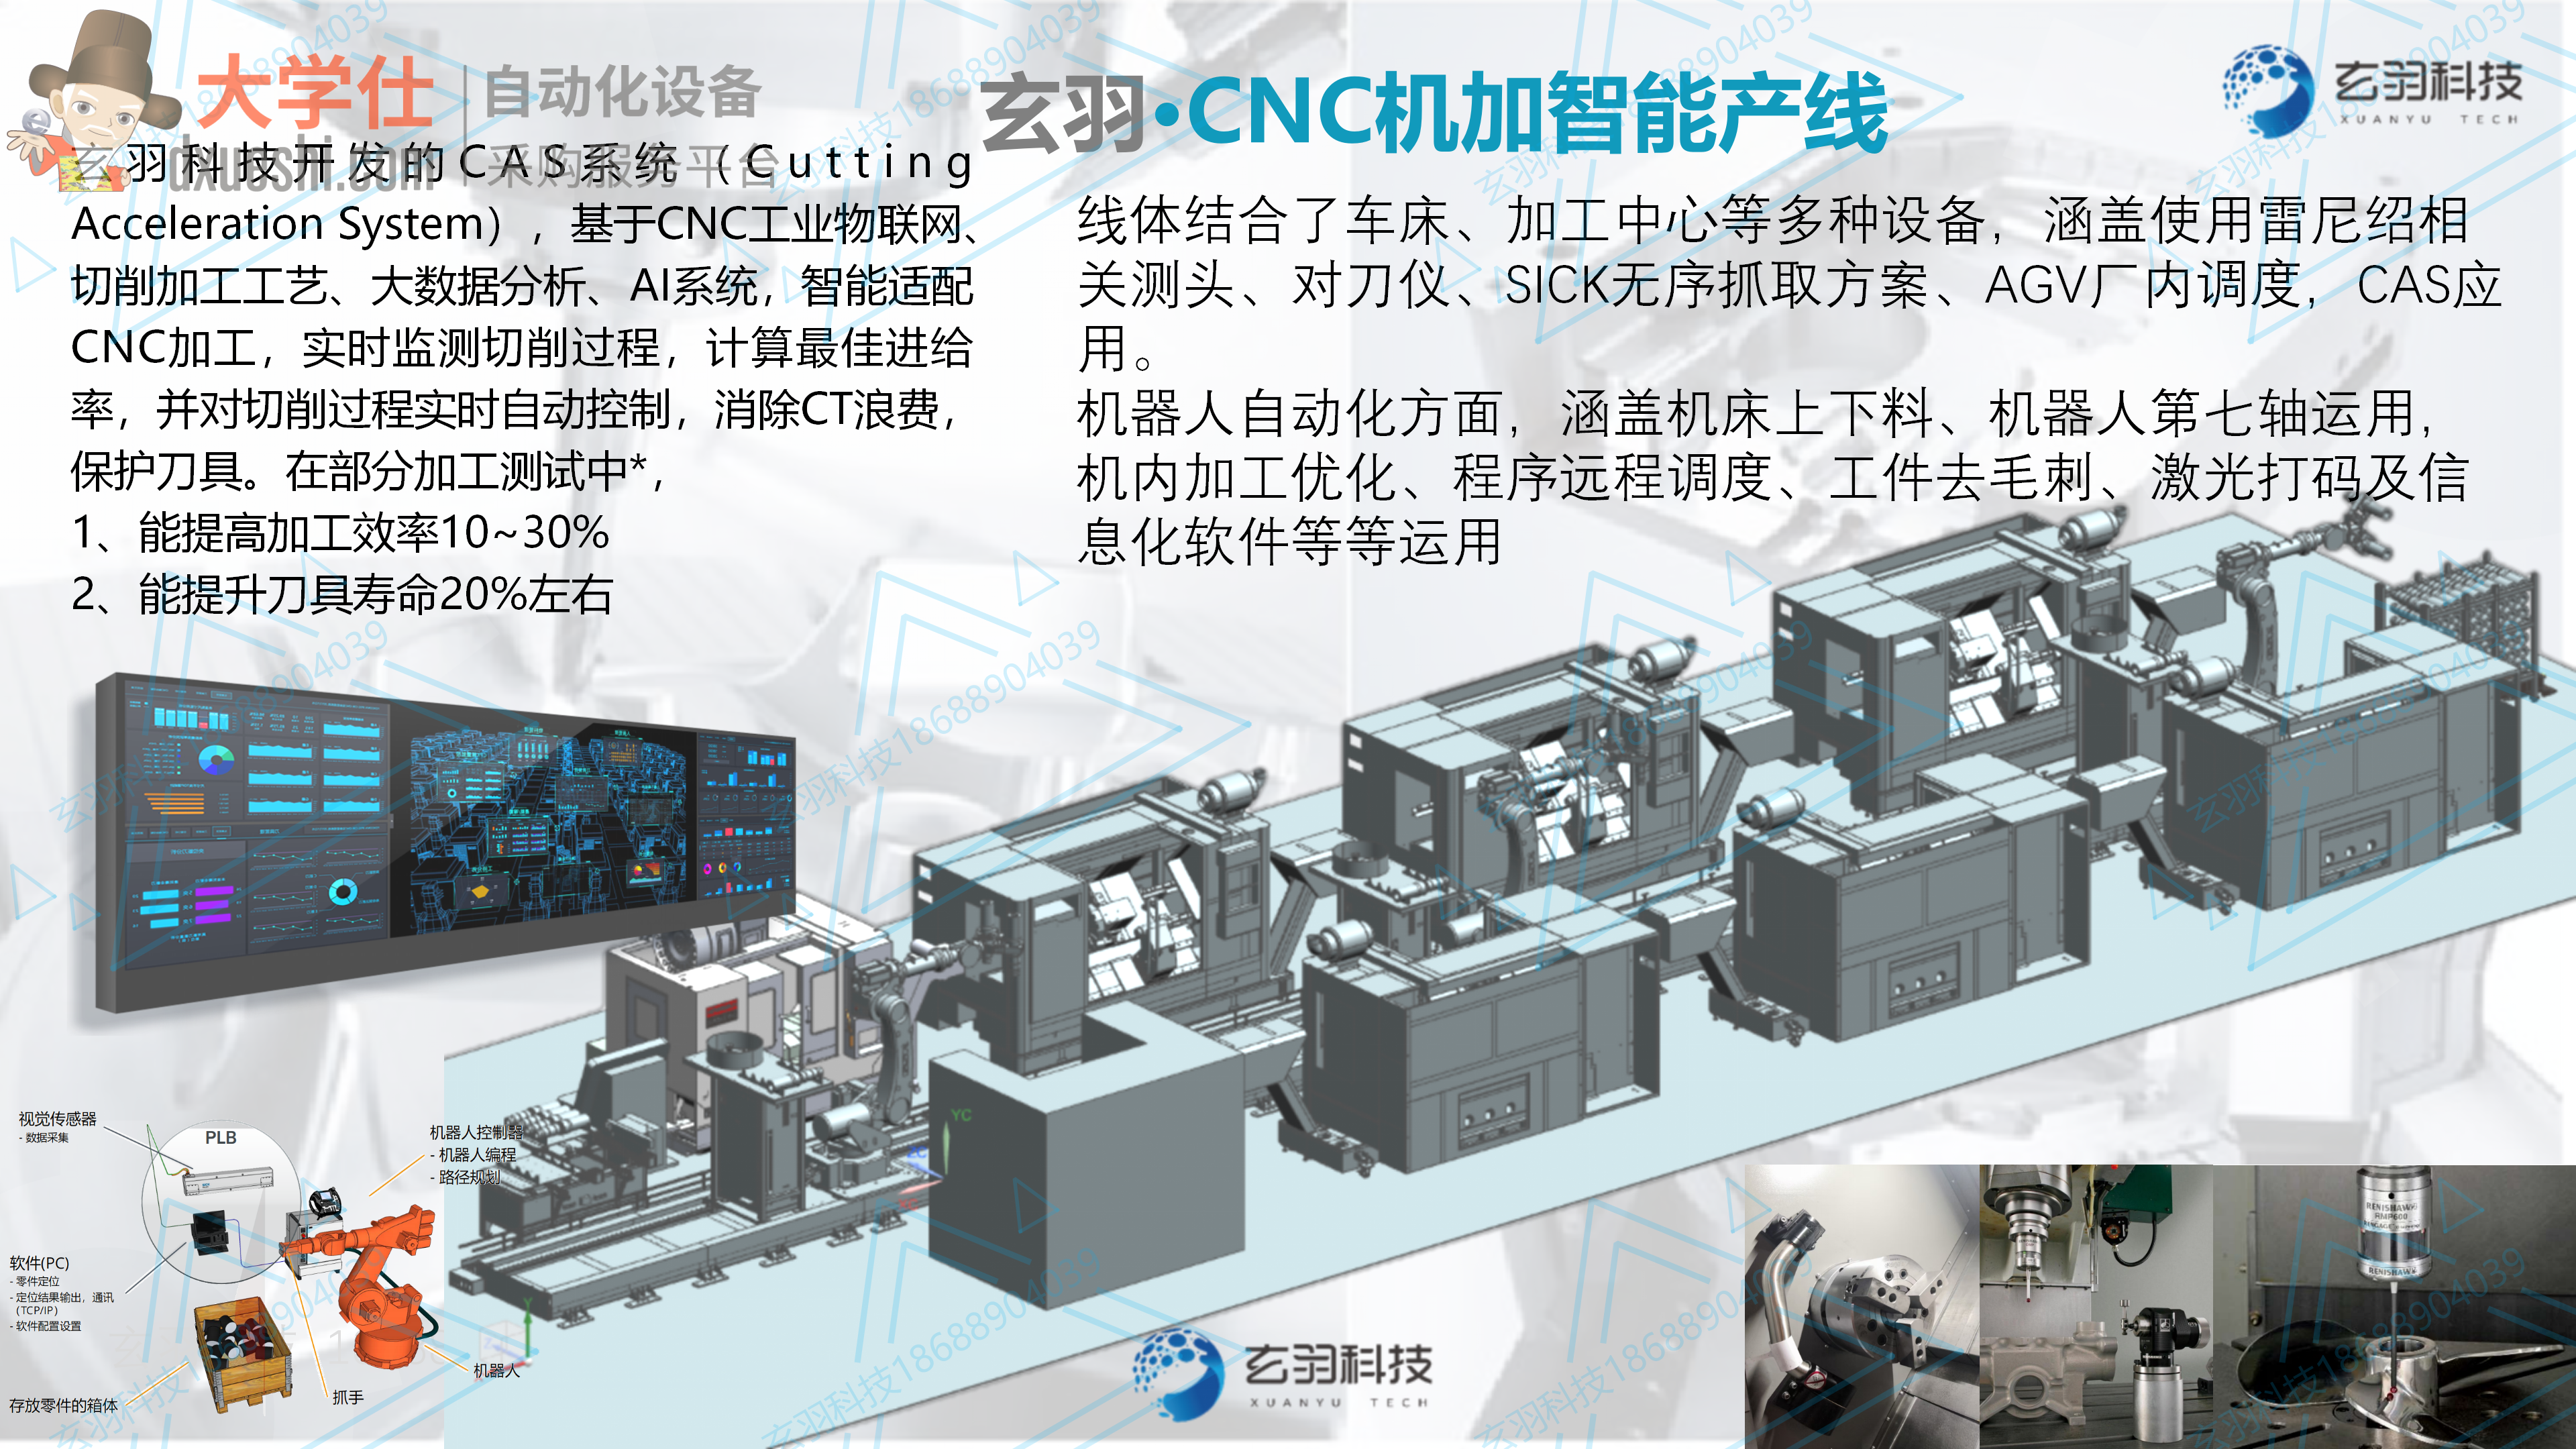 玄羽CNC智能加工产线 视觉无序抓取 机内加工优化